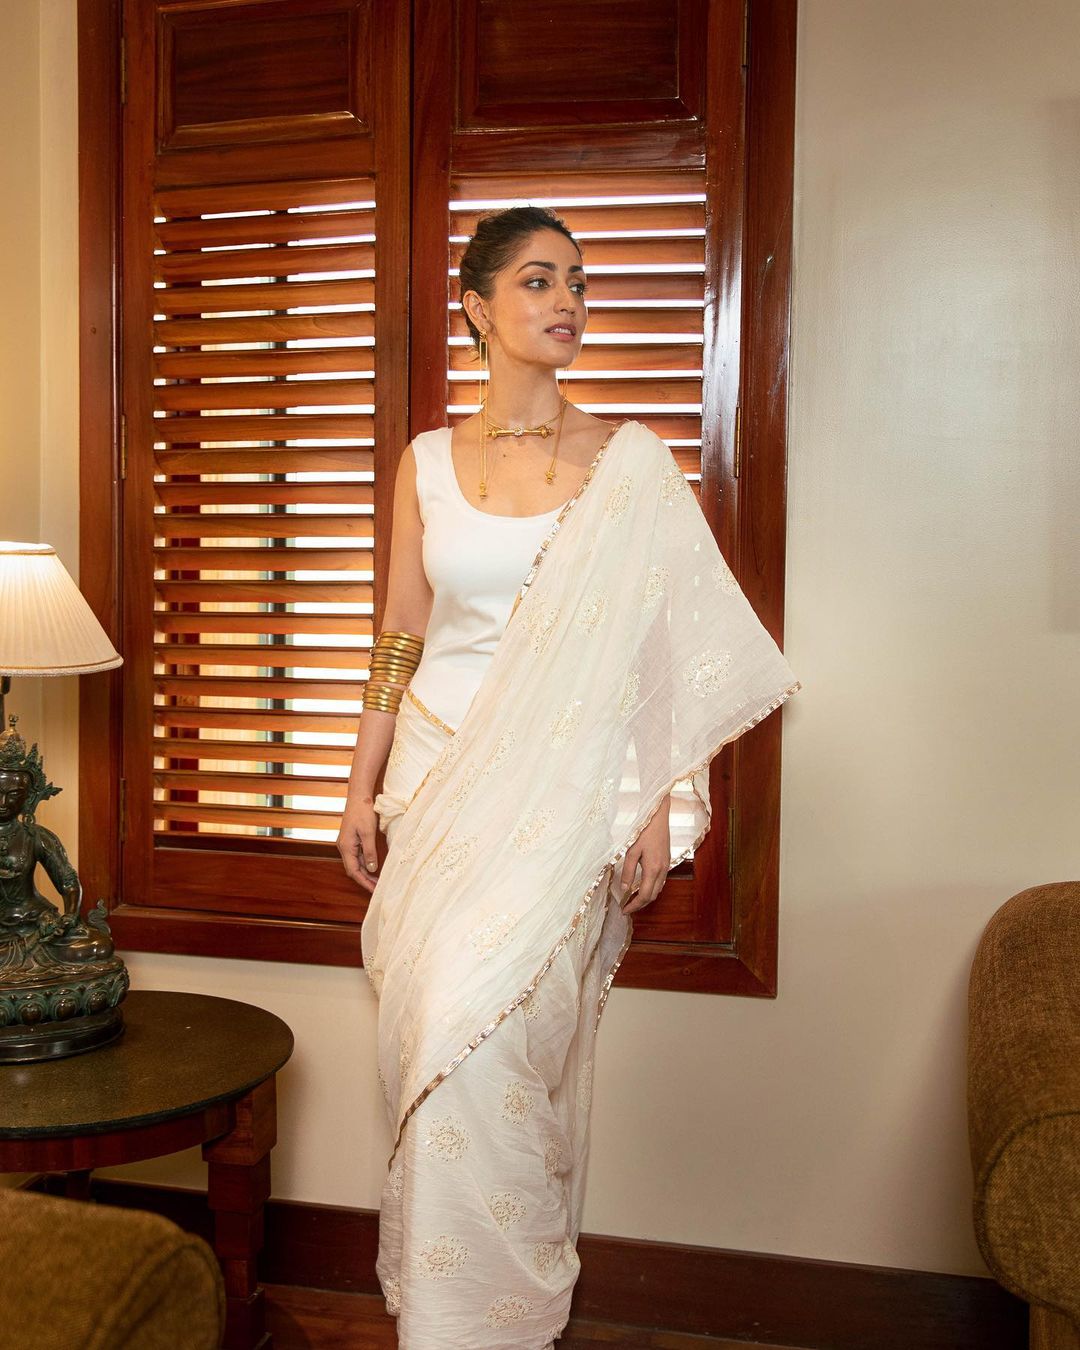 Yami Gautam accessorised her white saree with gold jewellery.